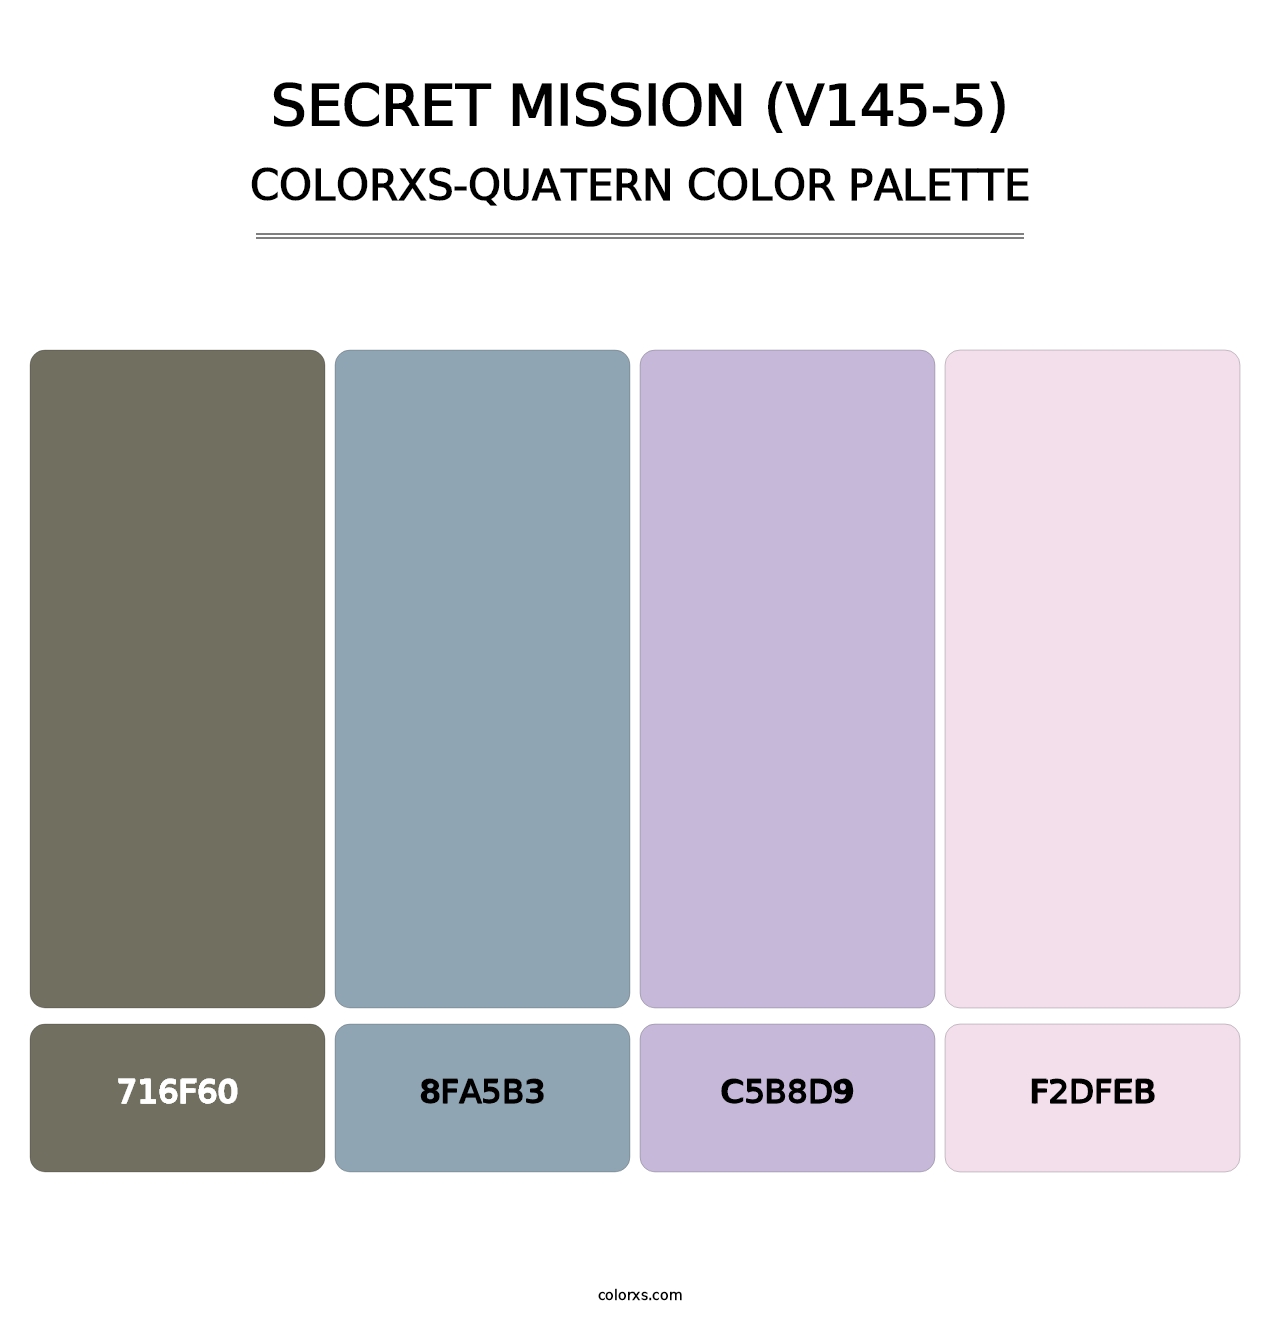 Secret Mission (V145-5) - Colorxs Quatern Palette